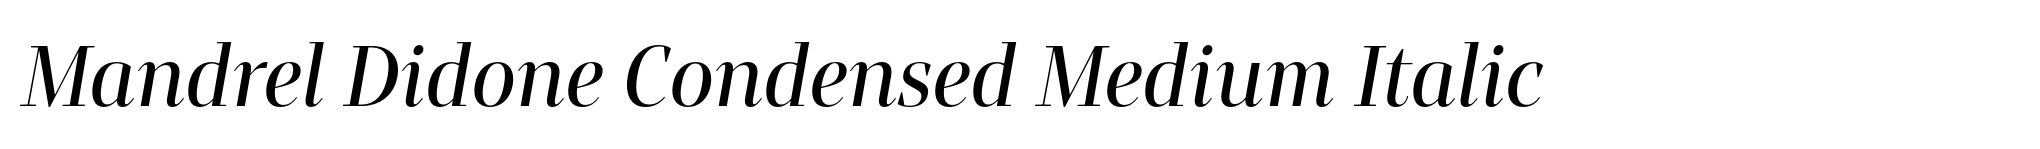 Mandrel Didone Condensed Medium Italic image